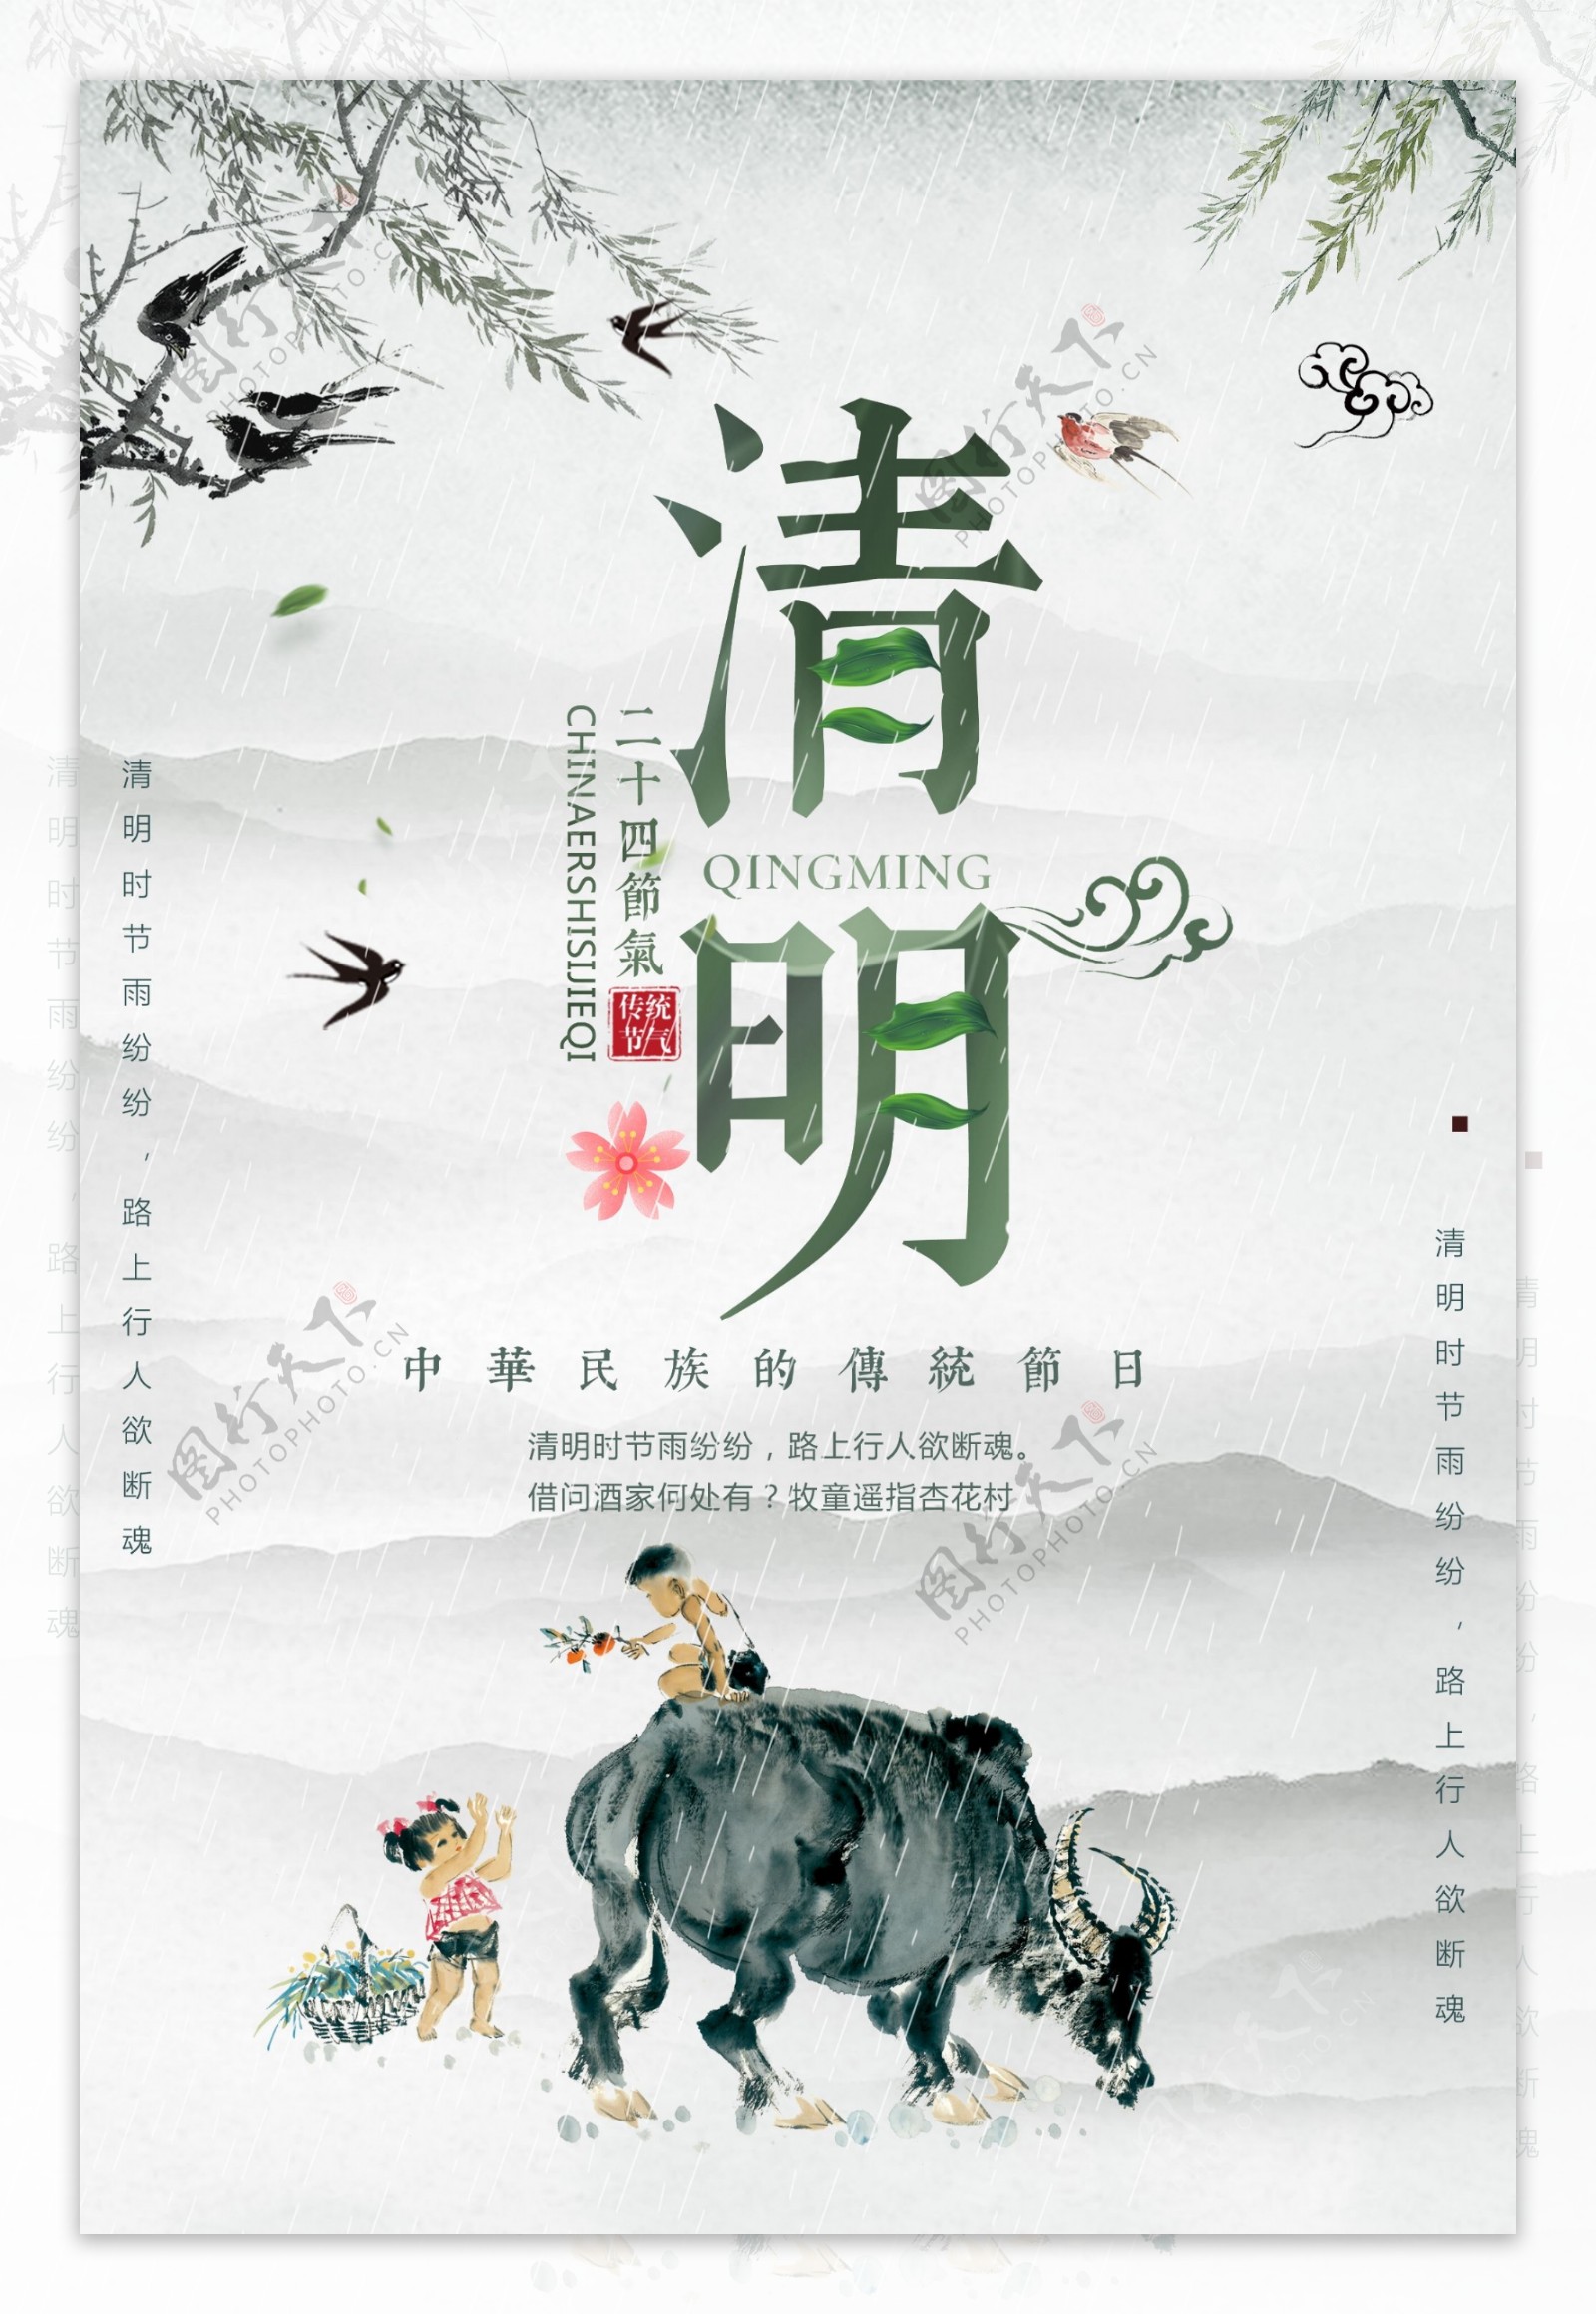 中国传统节日清明海报